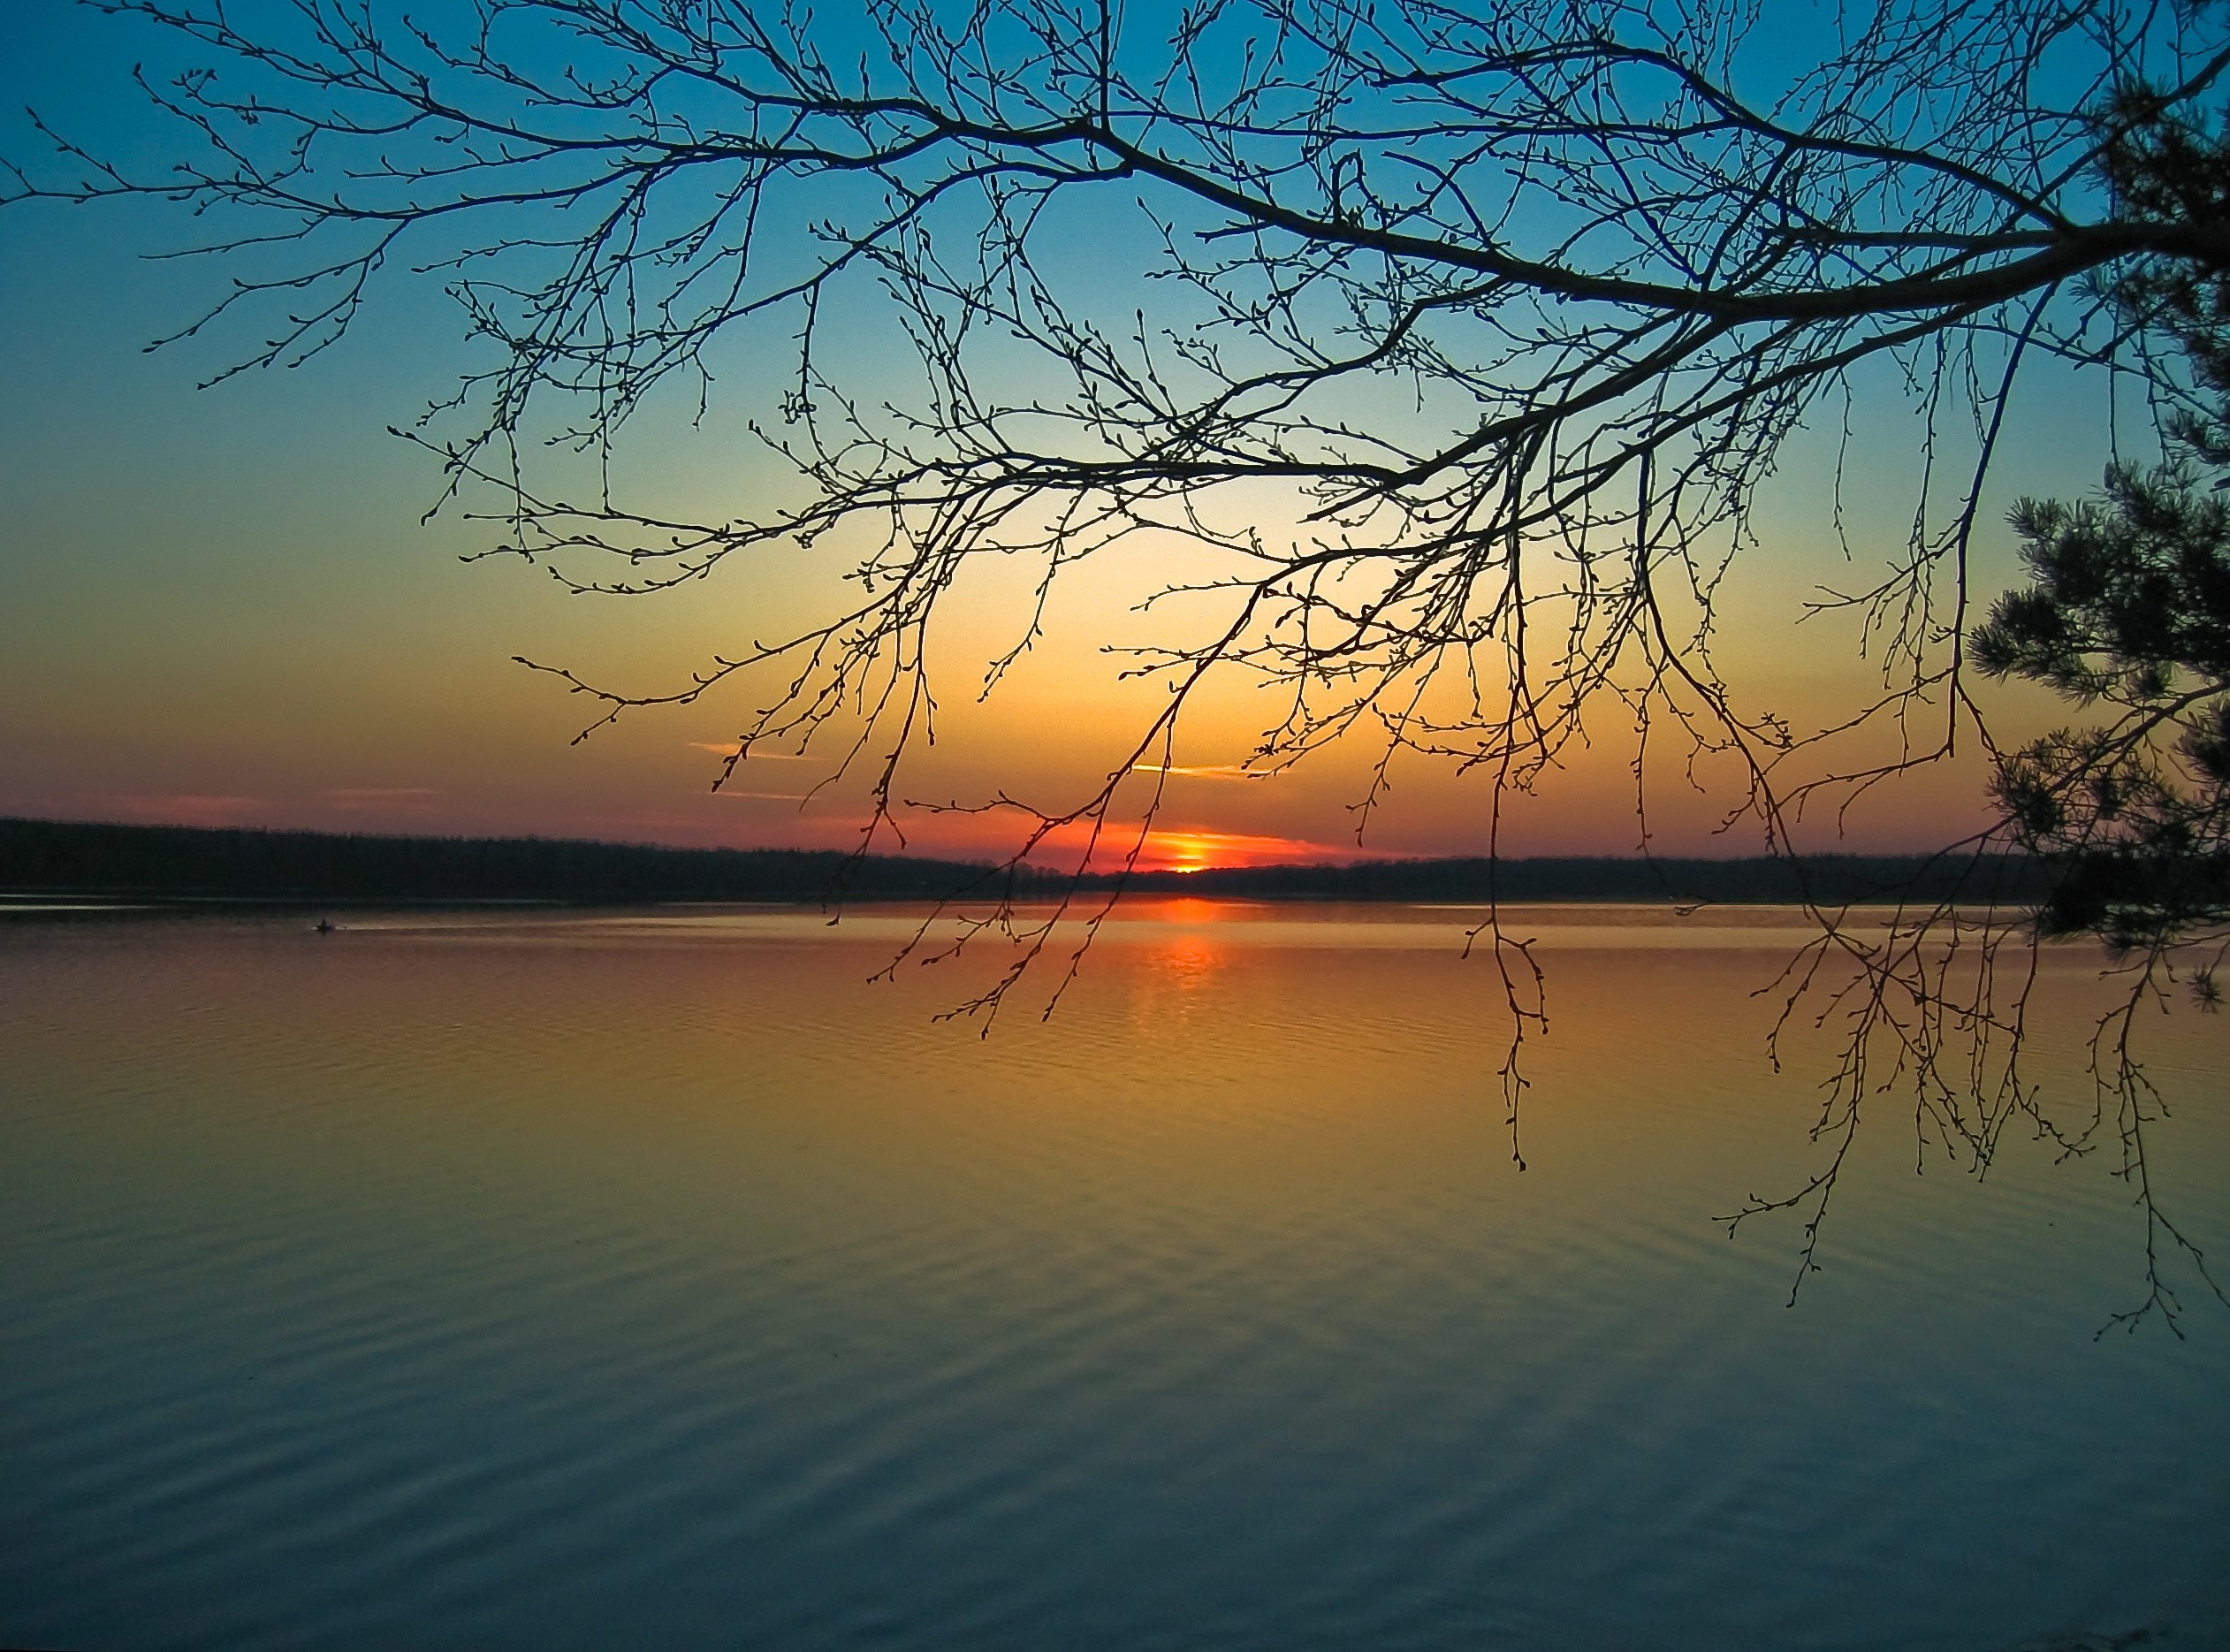 Безмятежно спокойное. Безмолвие природы. Вечерний закат. Рассвет на реке. Закат на озере.